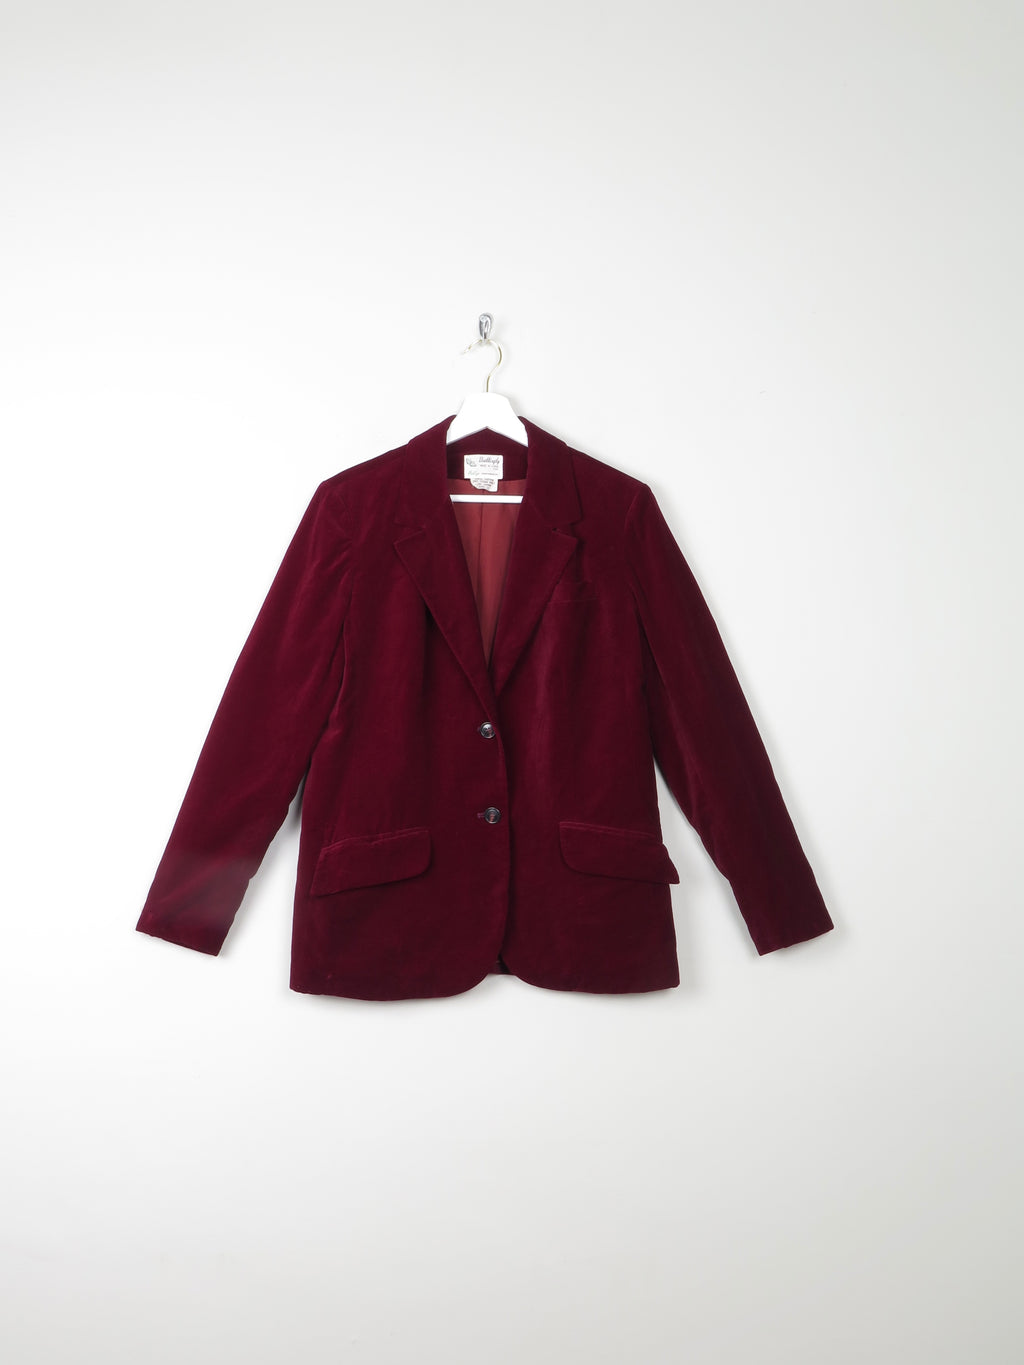 Women's Tailored Vintage Cherry Red Velvet Jacket 10- Small 12